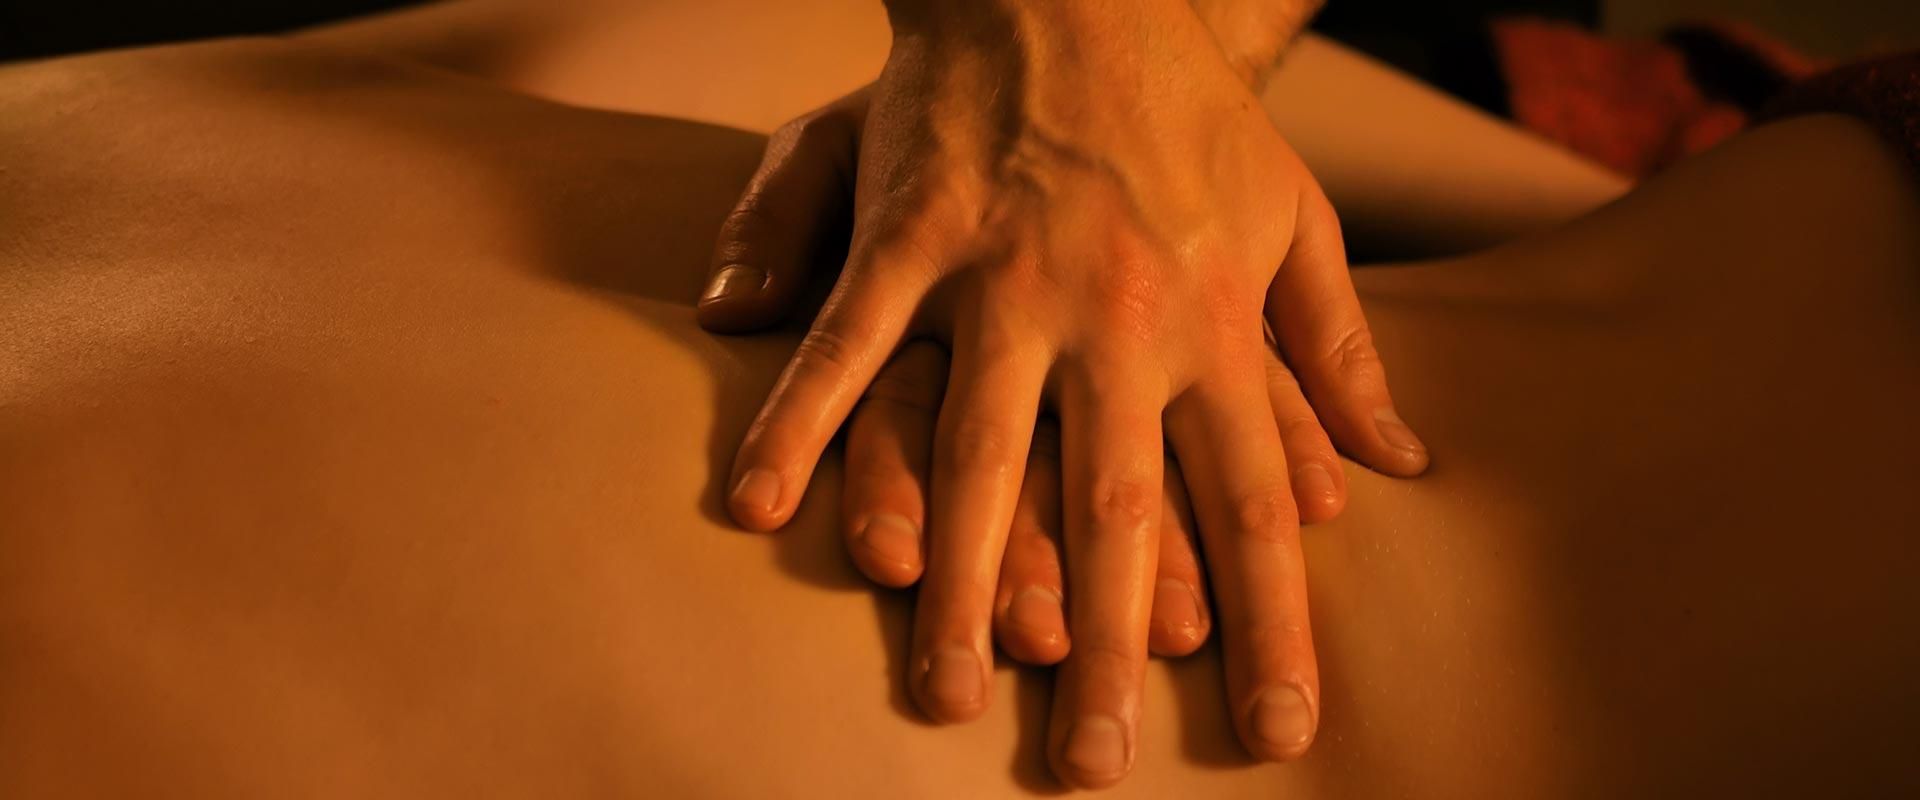 Anticiper un premier massage tantrique